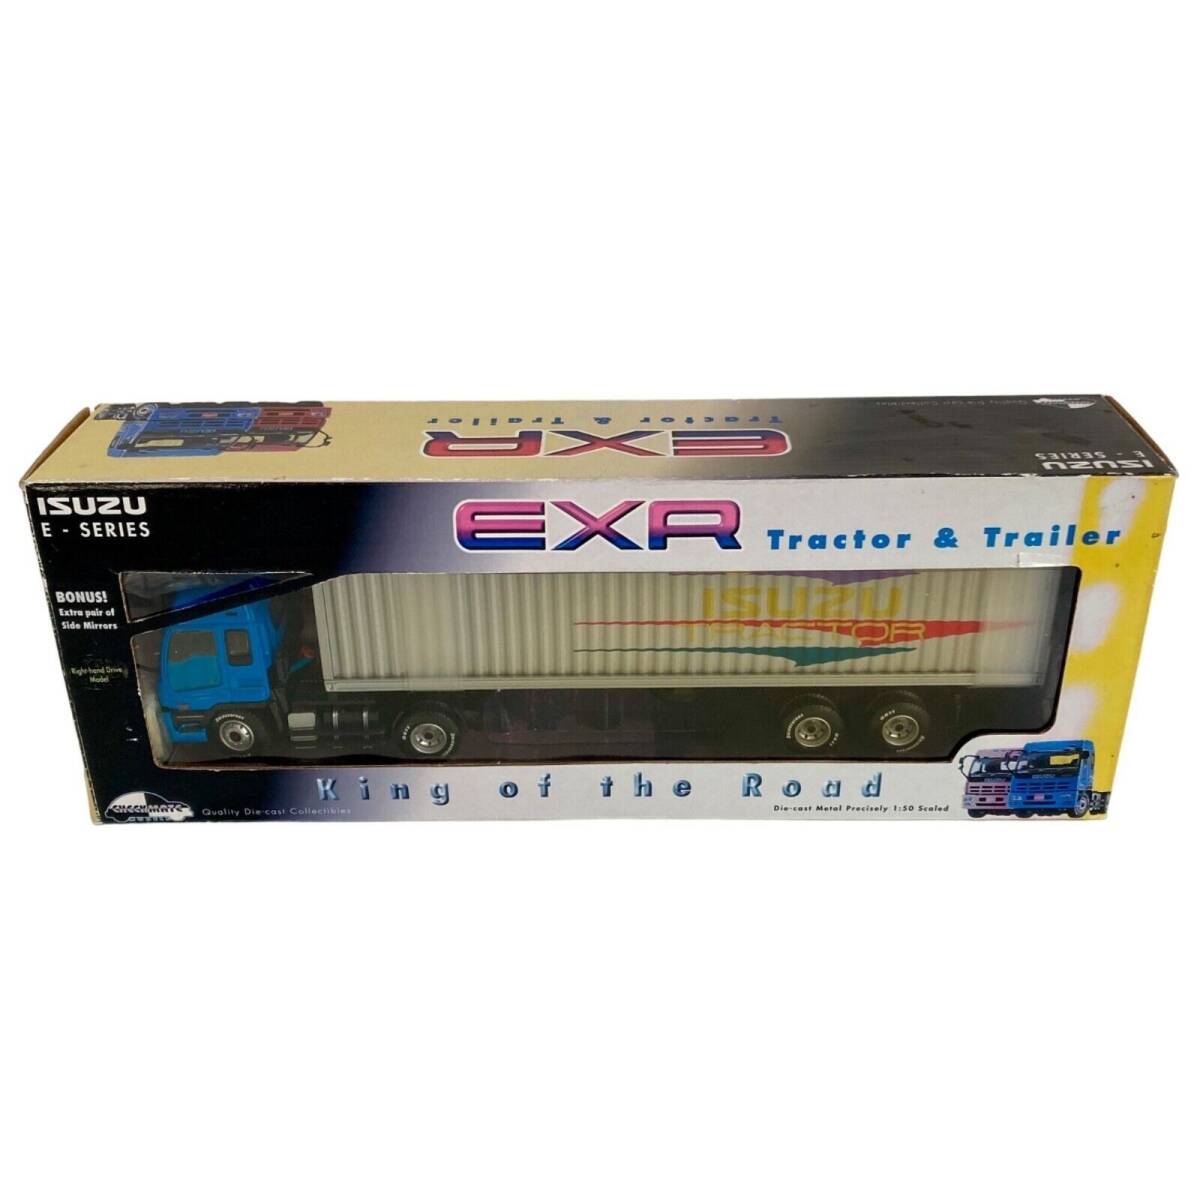 RARE Checkmate Models Isuzu E Series EXR Semi Truck & Trailer 1/50 Scale w/ BOX! 海外 即決_RARE Checkmate Mod 1